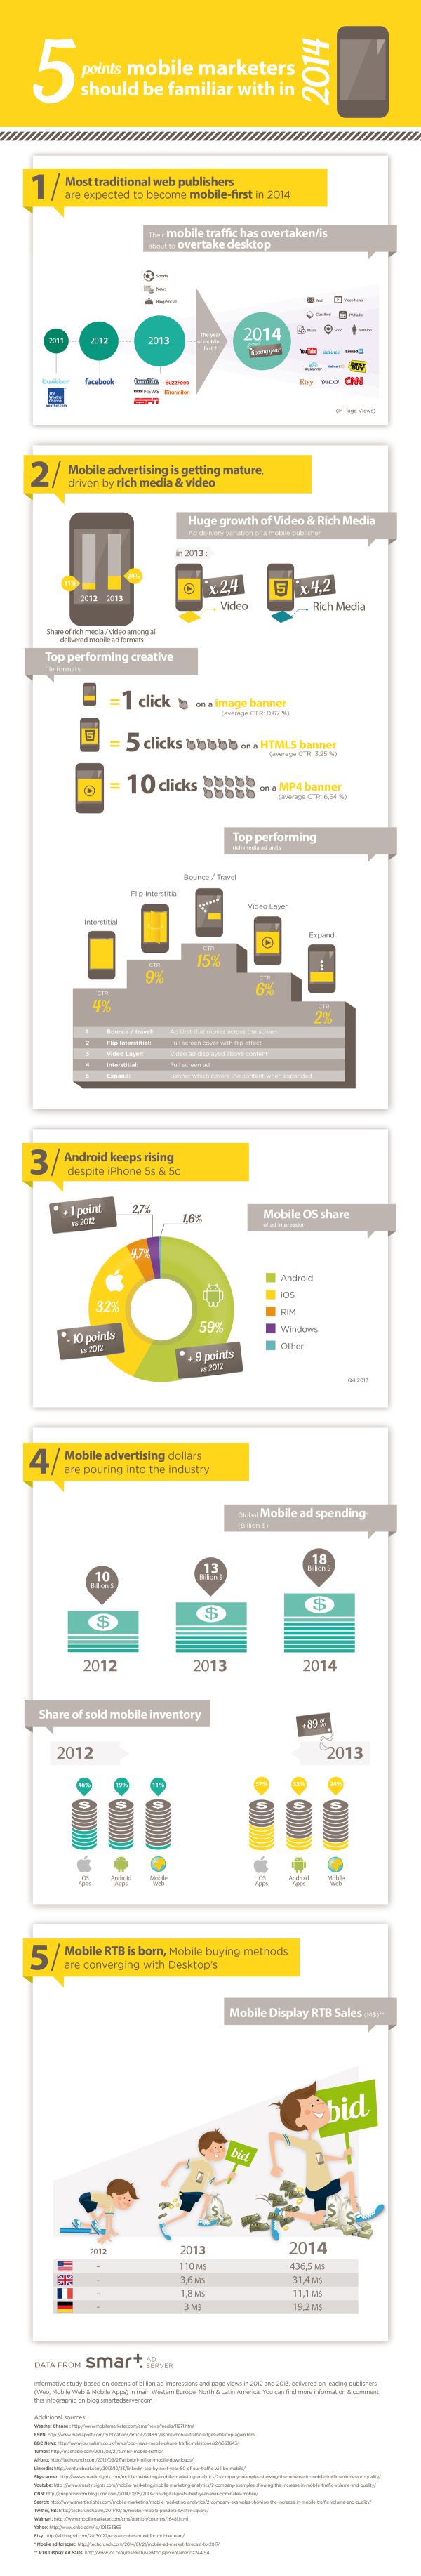 TR : Infographie " Les 5 points que les marketers mobiles devraient savoir en 2014"